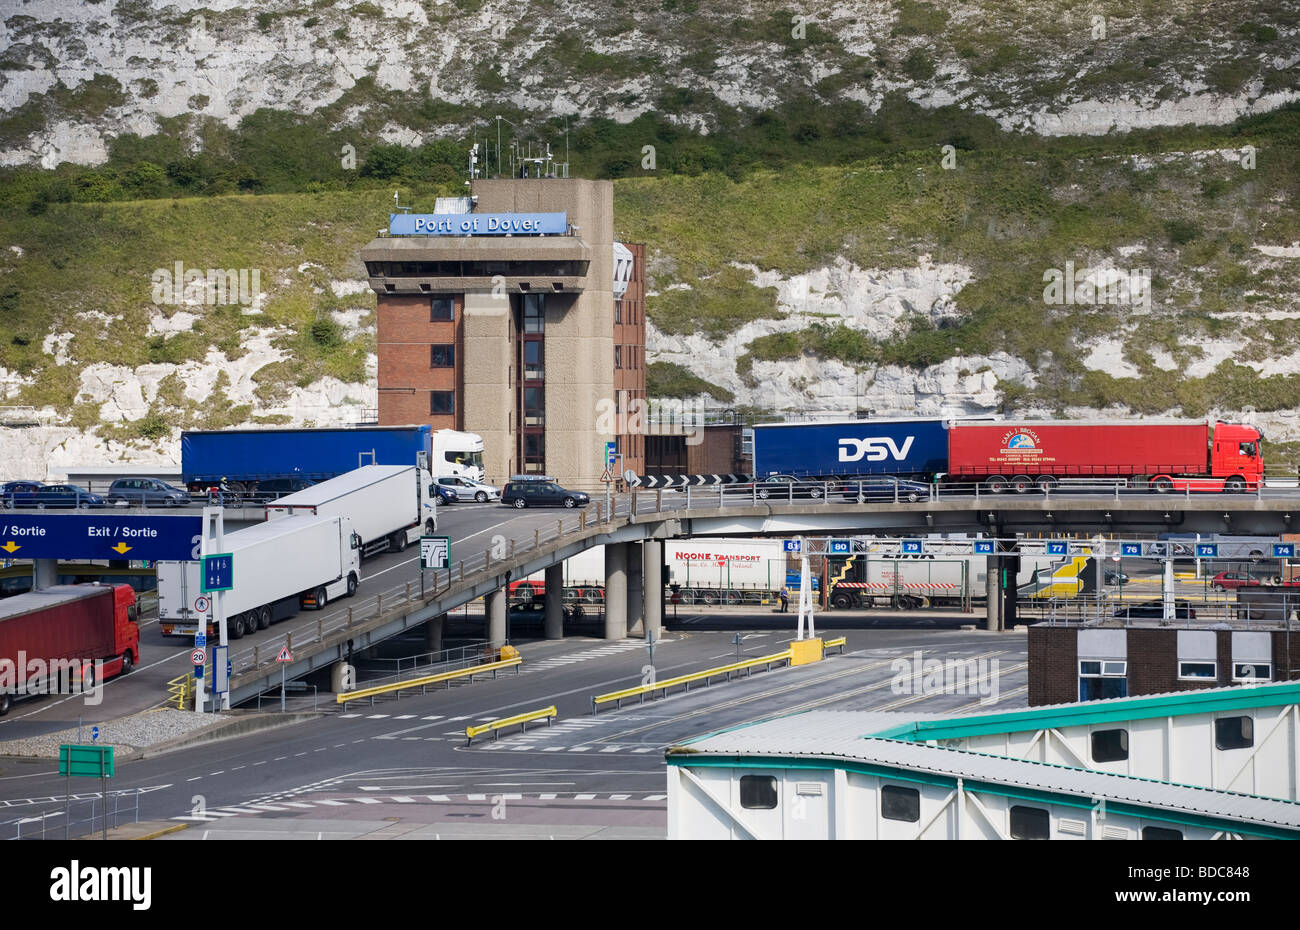 Les camions d'attente dans le port de ferry de Douvres, Angleterre, RU Banque D'Images